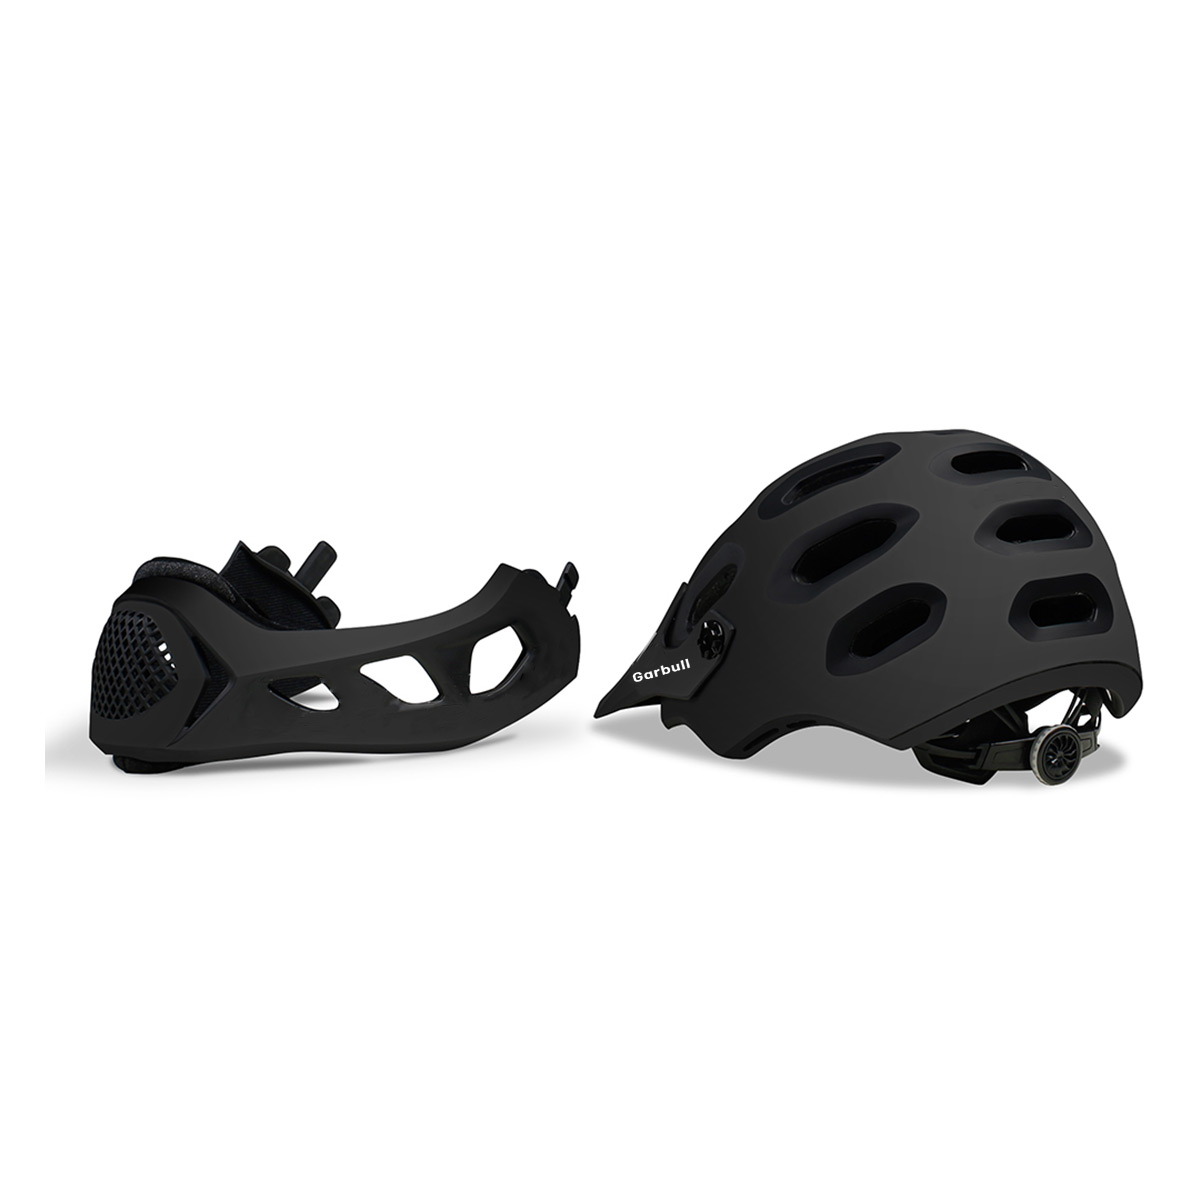 cm, Weiß) cm 56-62 Helm PROSCENIC Mountainbike,